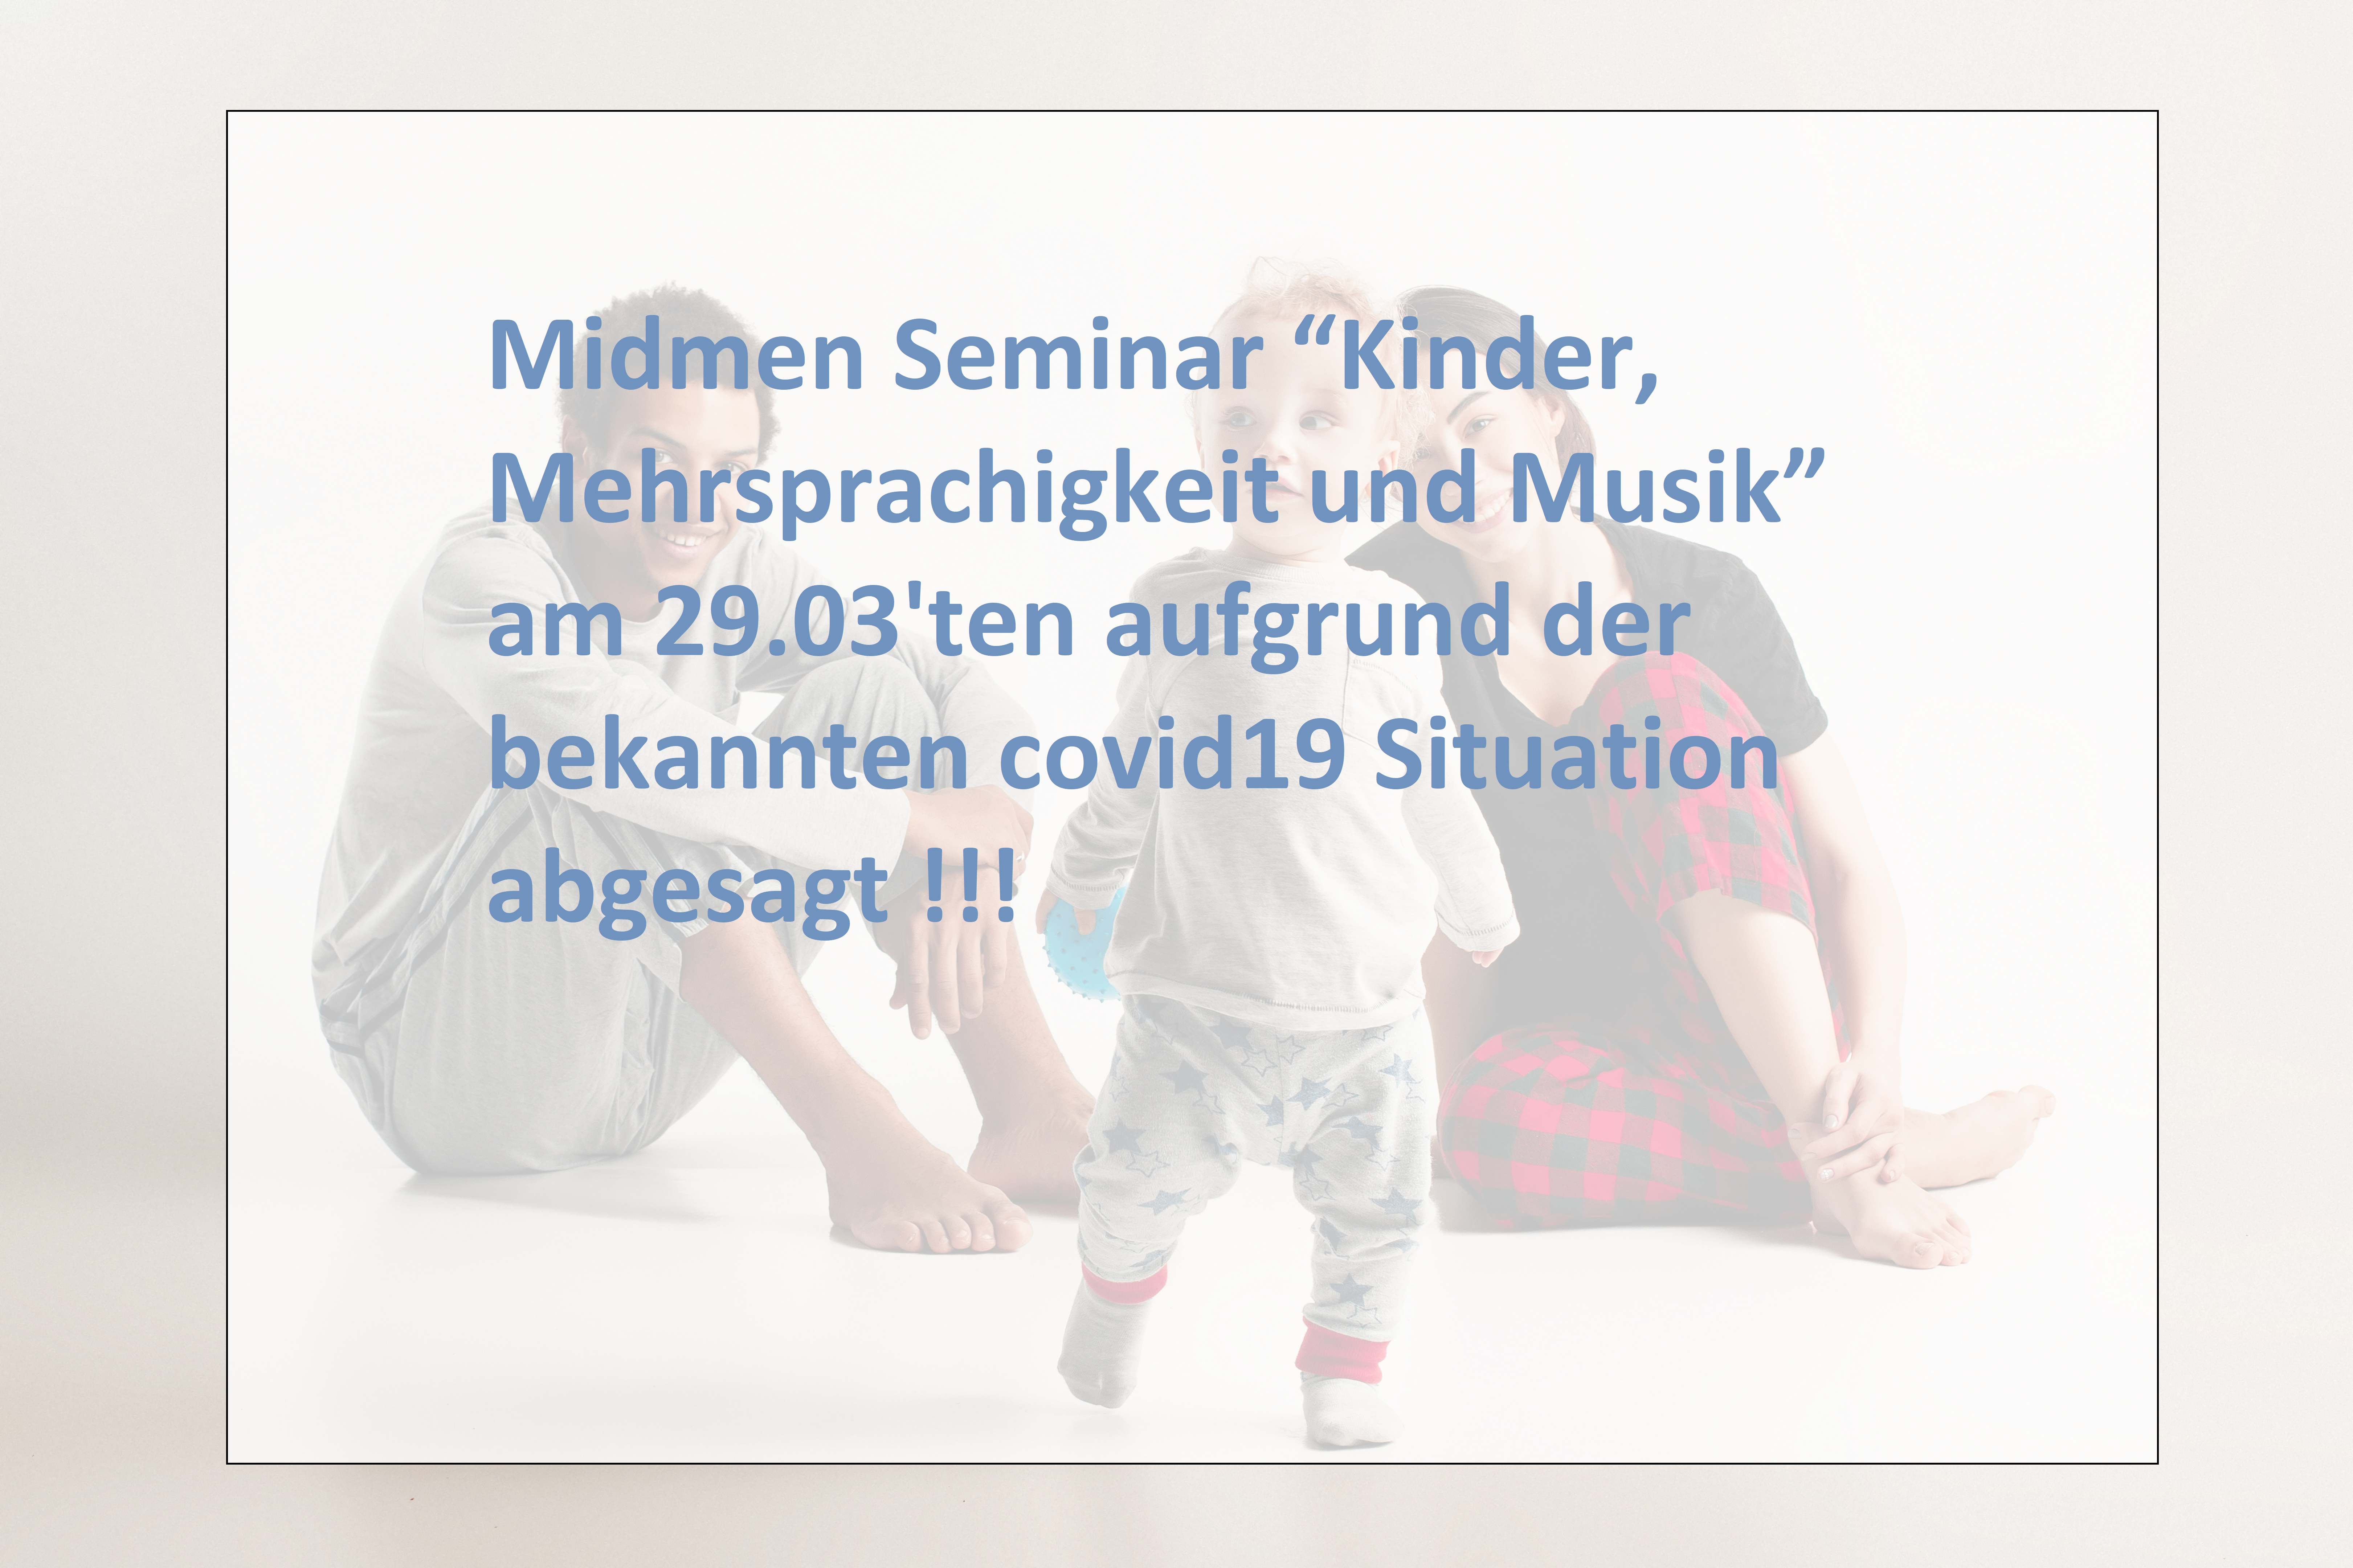 Info: “Kinder, Mehrsprachigkeit und Musik” am 29.03’ten